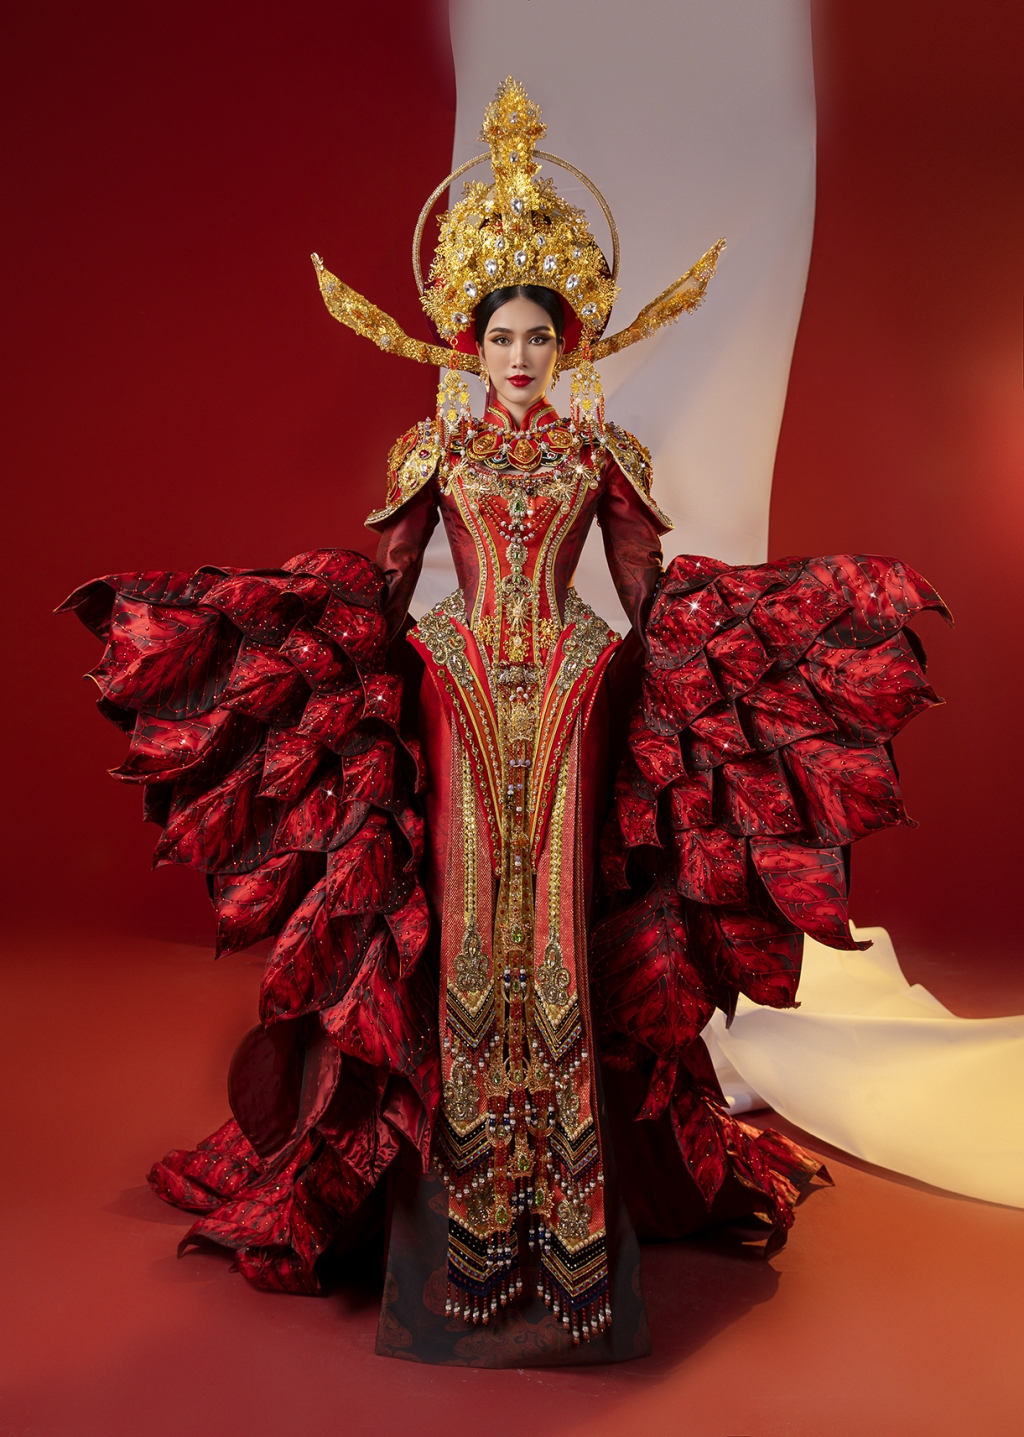 Mang hình ảnh Nữ Trạng Nguyên vào quốc phục, Phương Anh gây ấn tượng mạnh tại 'Miss International 2022'